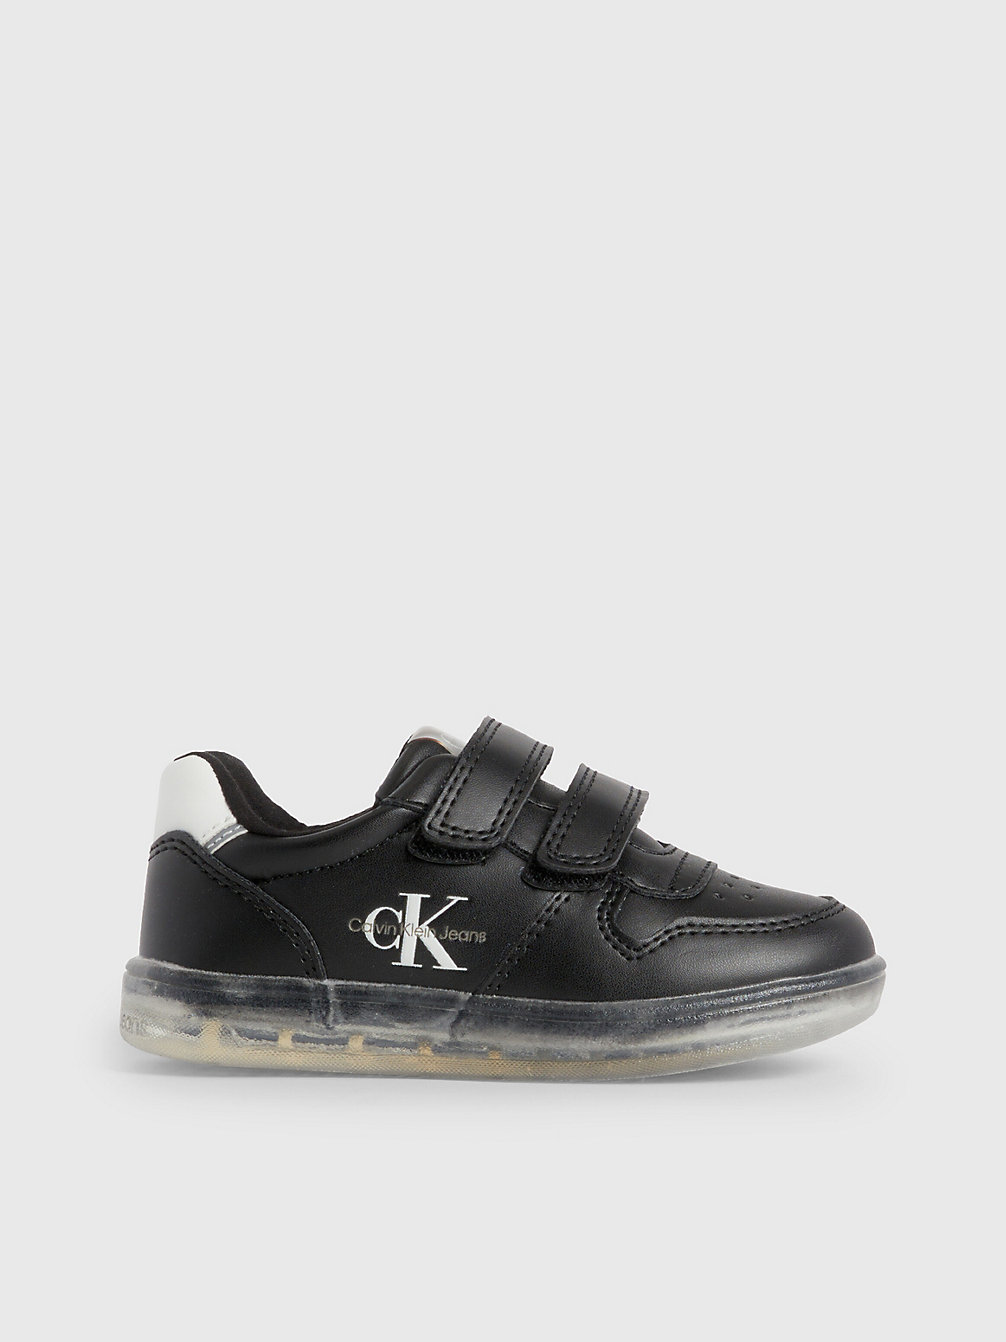 BLACK > Sneakers Mit Klettverschluss Für Kleinkinder Und Kinder > undefined kids unisex - Calvin Klein